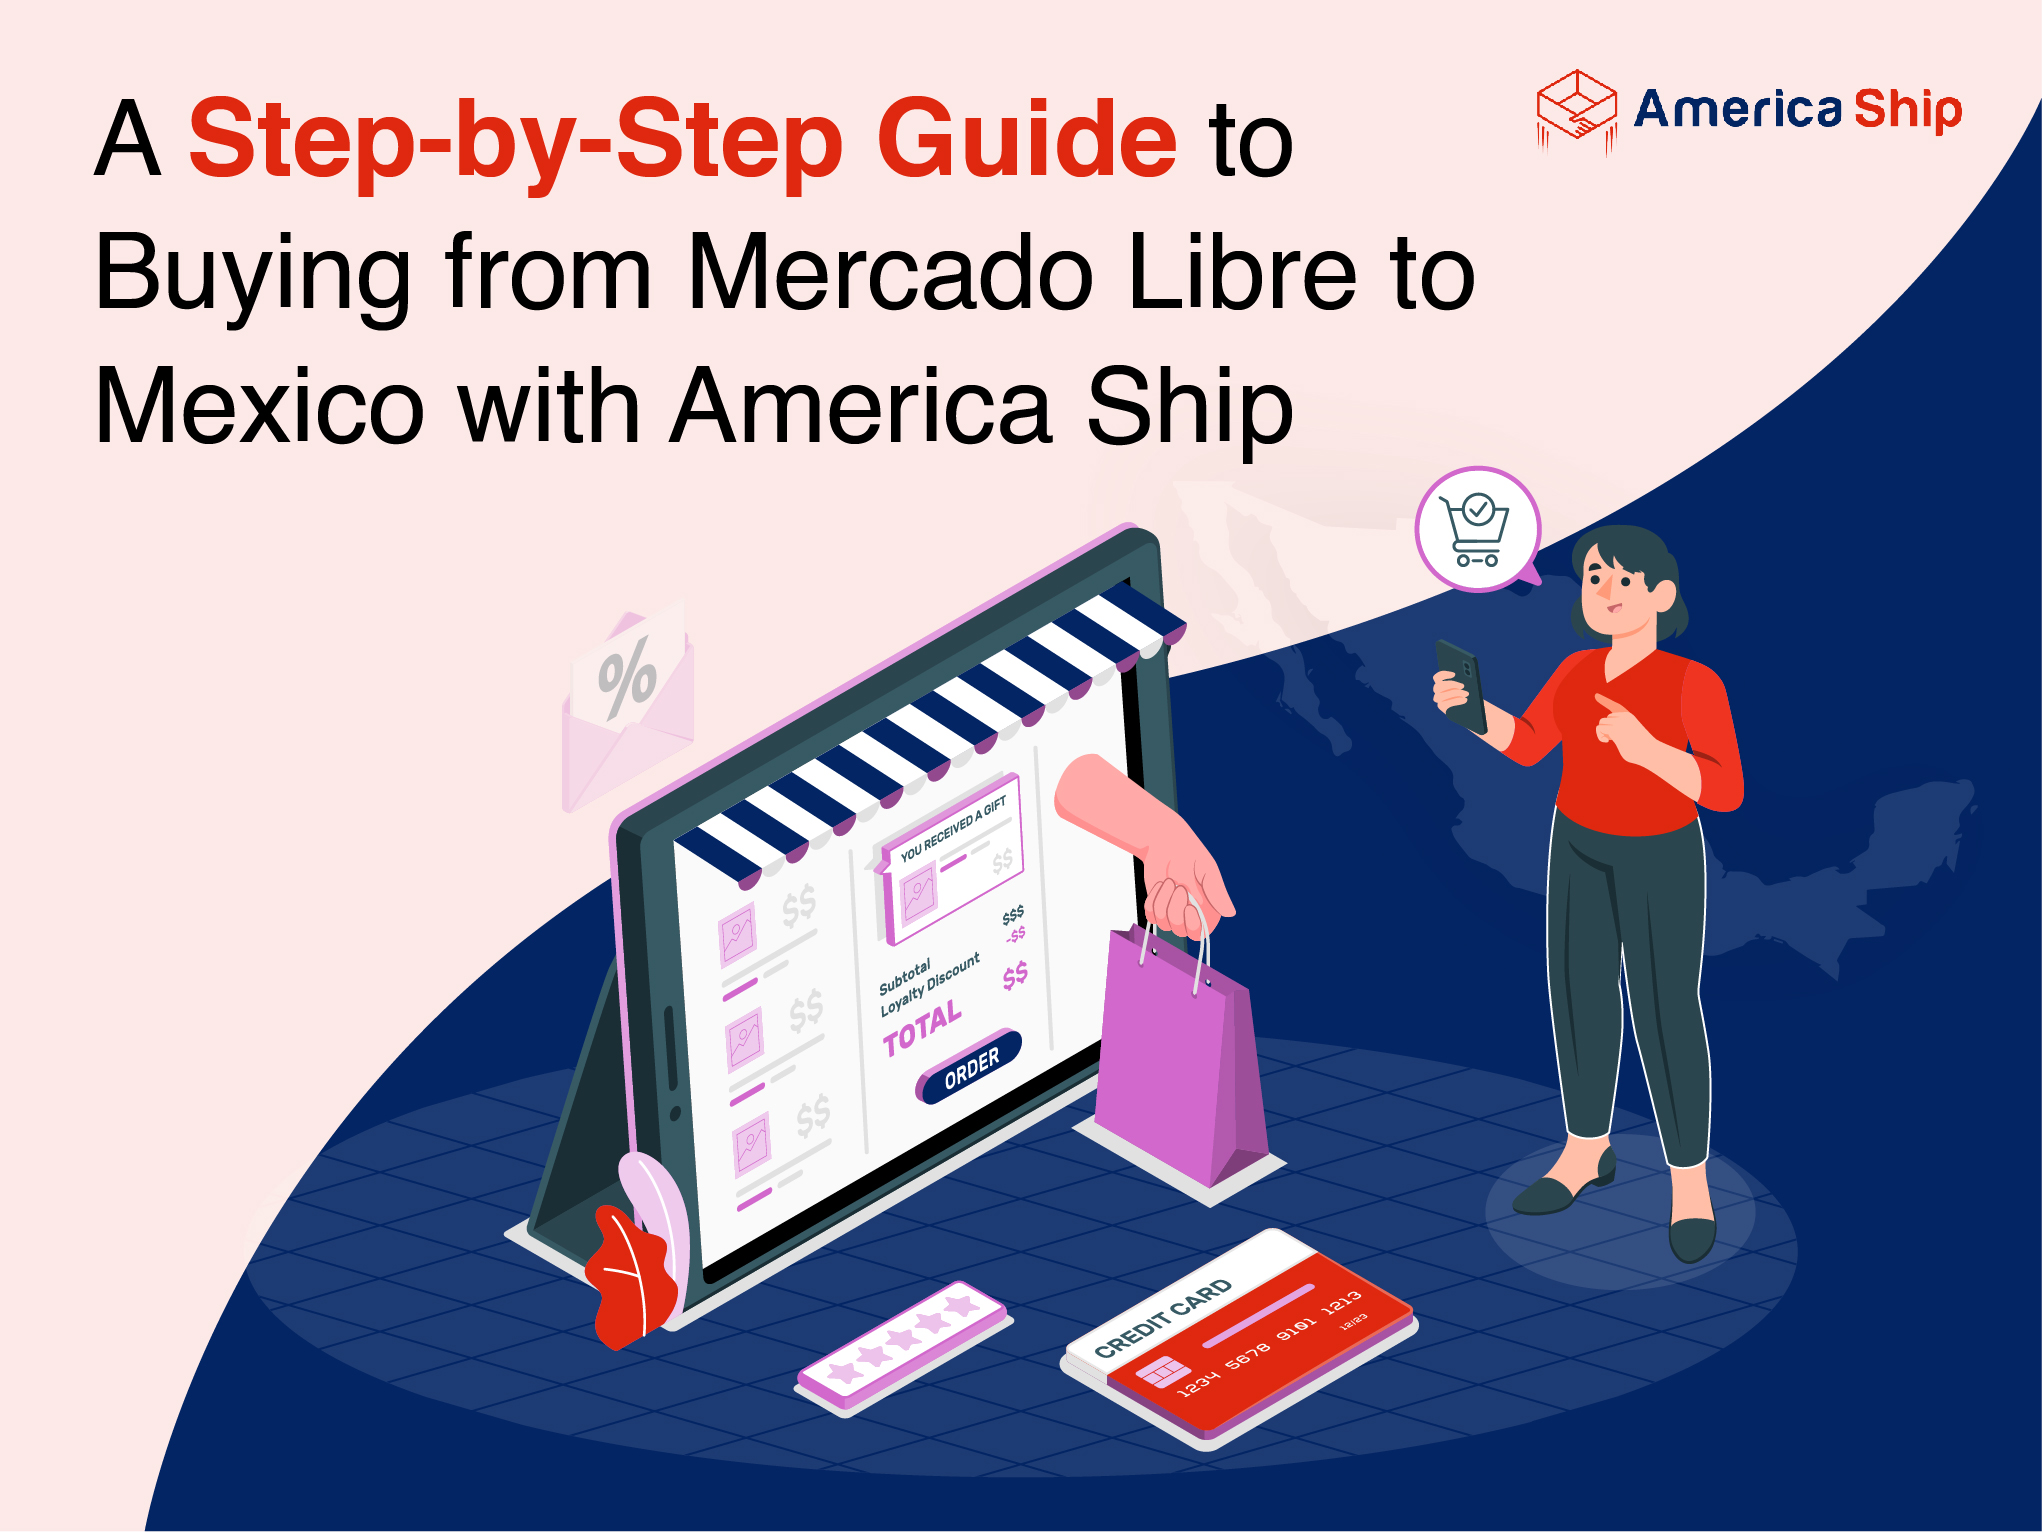 Guía paso a paso para comprar en Mercado Libre a México con America Ship